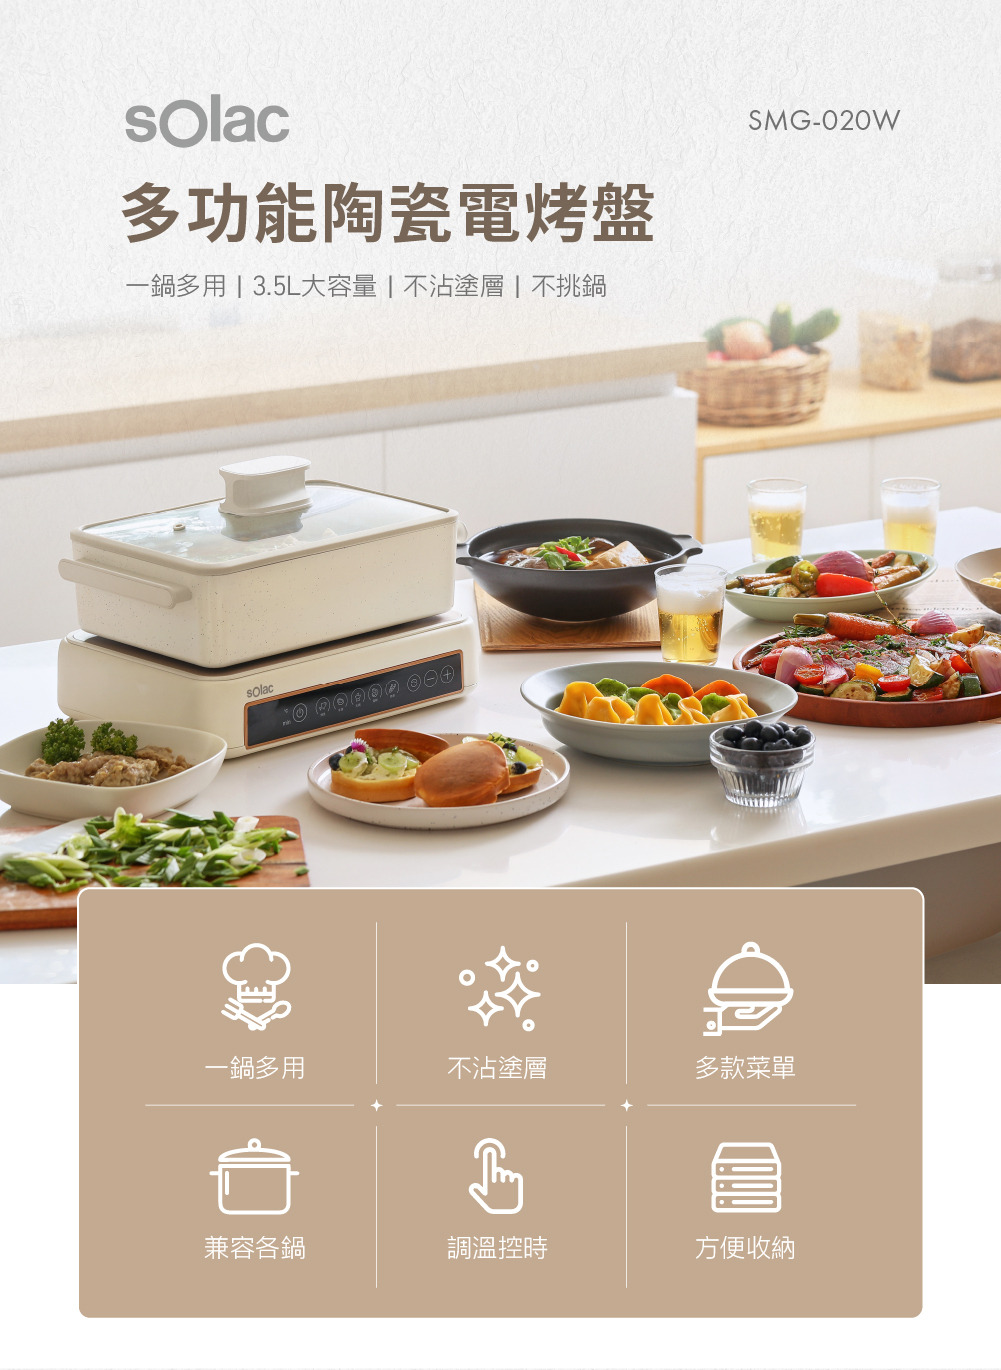 Solac 多功能陶瓷電烤盤 SMG-020W 一鍋多用、不沾塗層、多款菜單、兼容各種鍋、調溫控時、方便收納